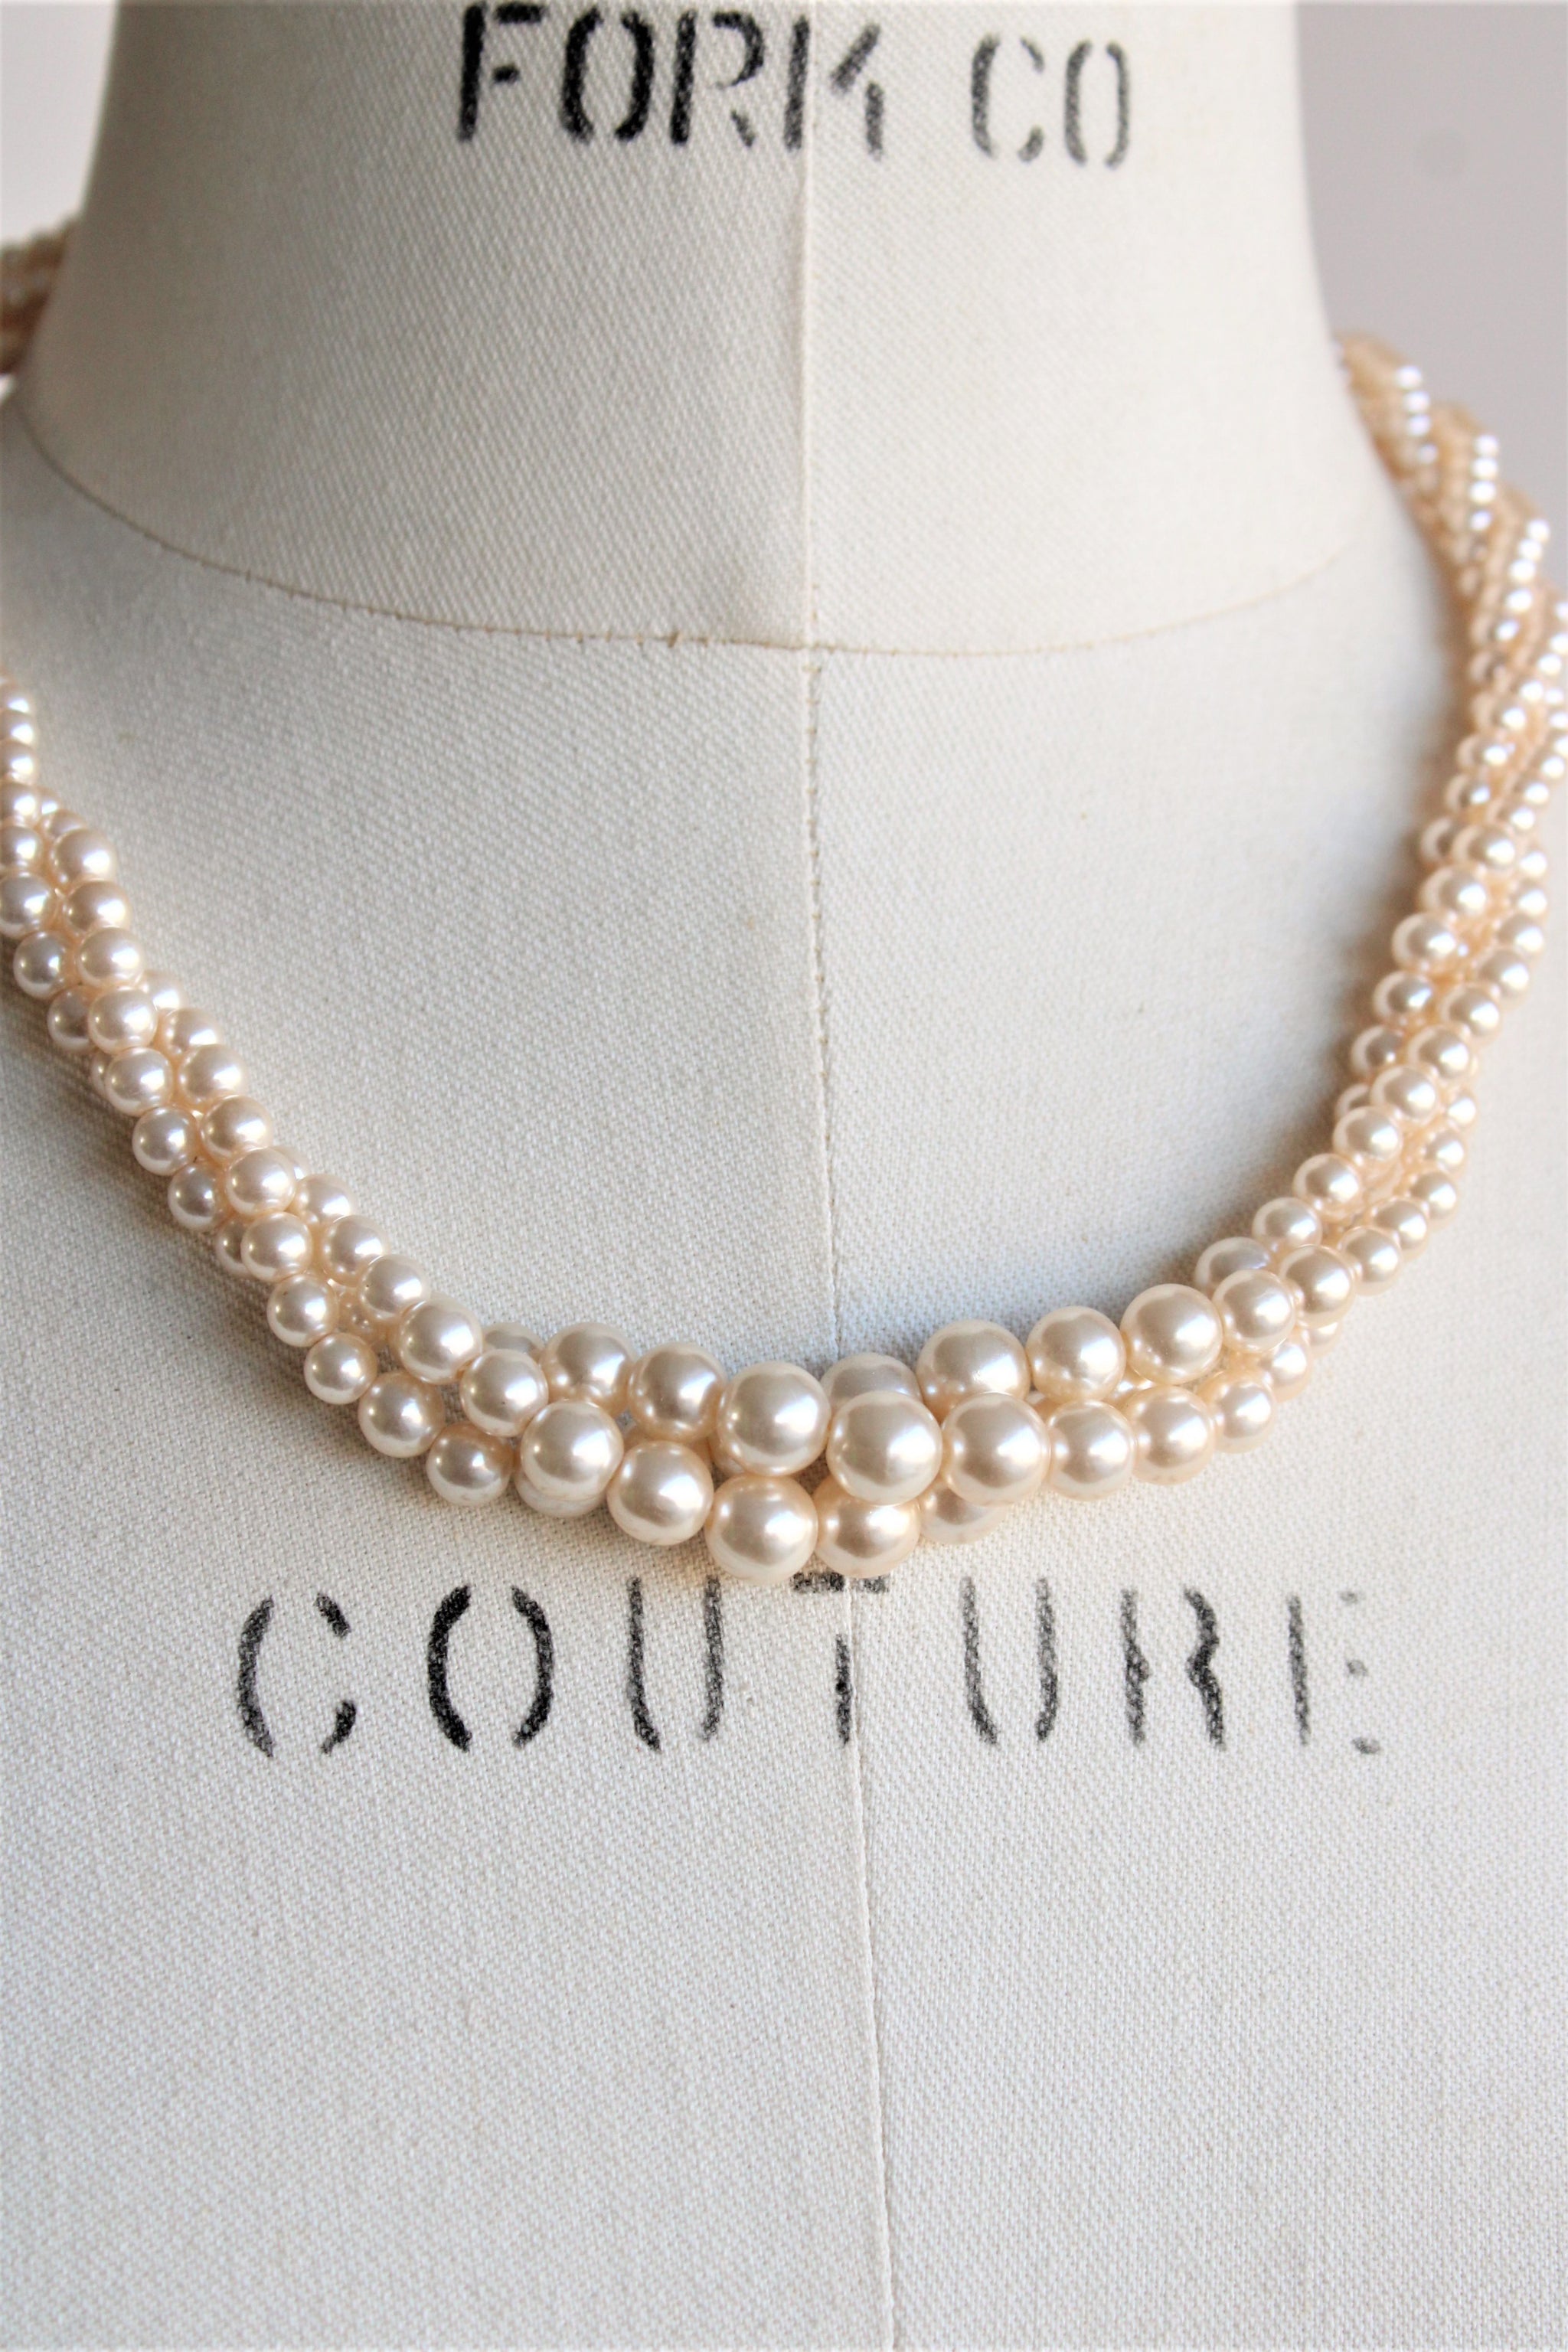 Vintage NAPIER Gold Tone Faux Pearl Necklace | eBay